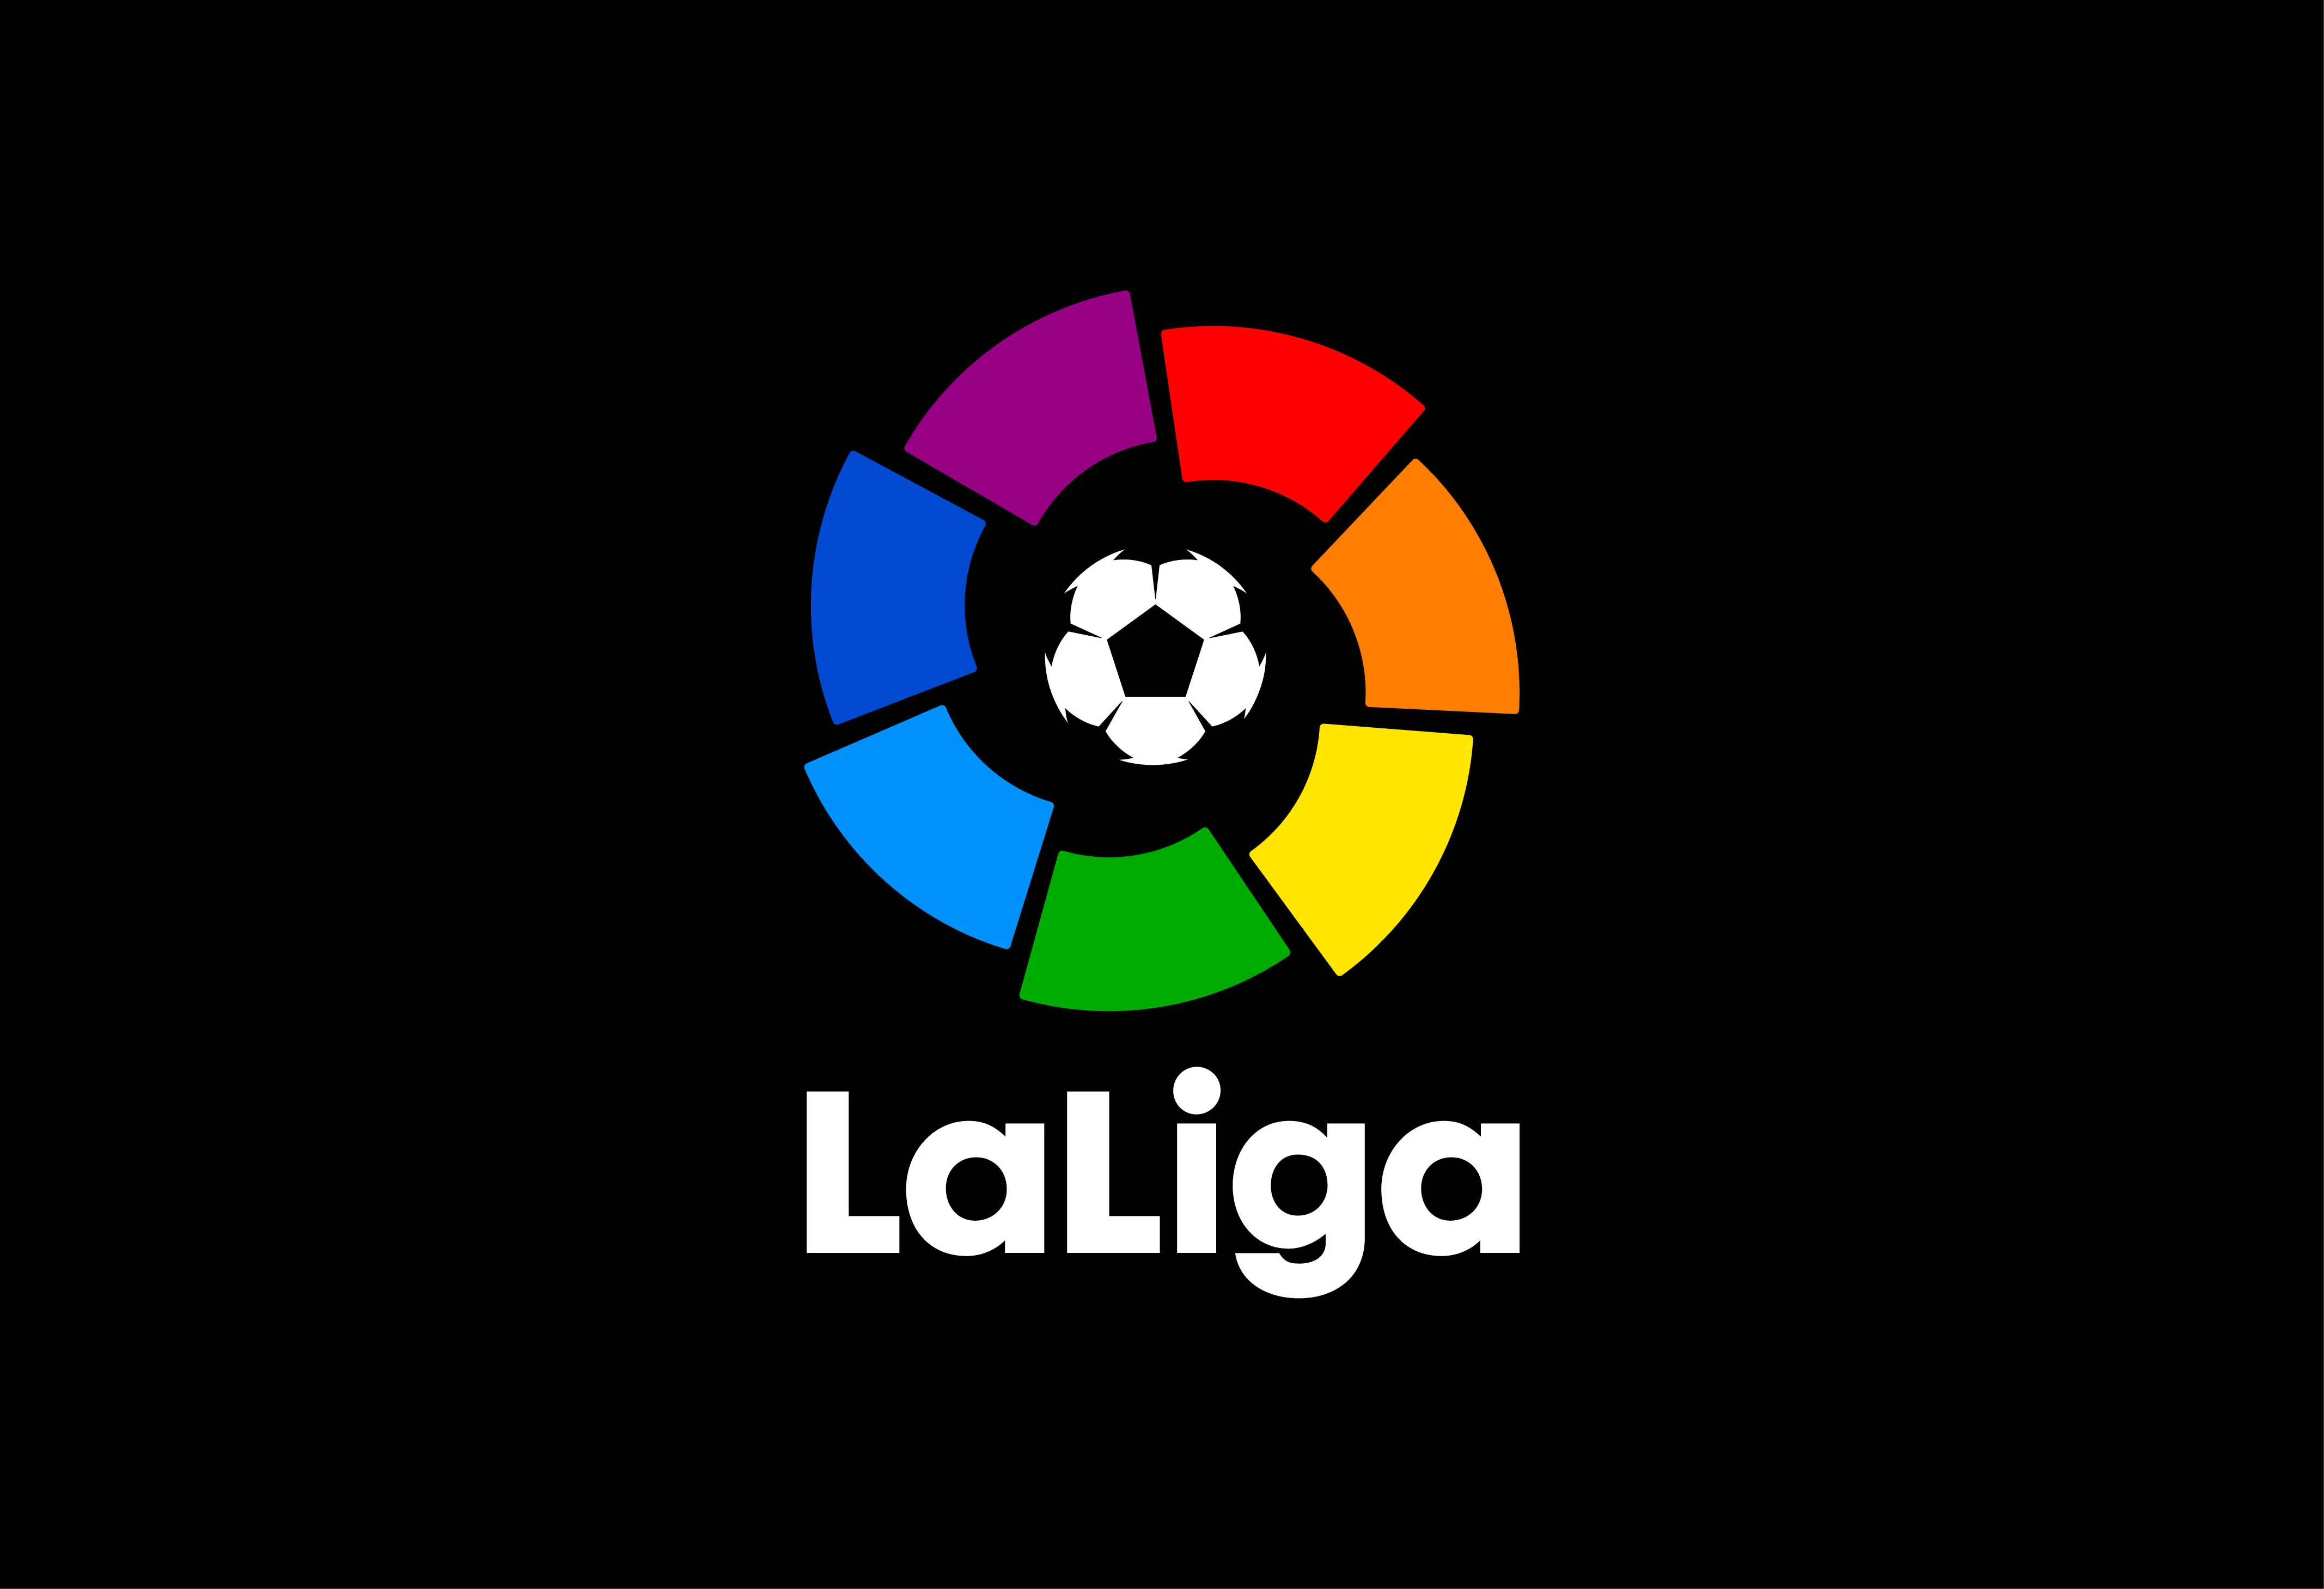 20.05.2023, godz. 21:00FC Barcelona - Real SociedadTyp: 2 (H +1,5 bramki)